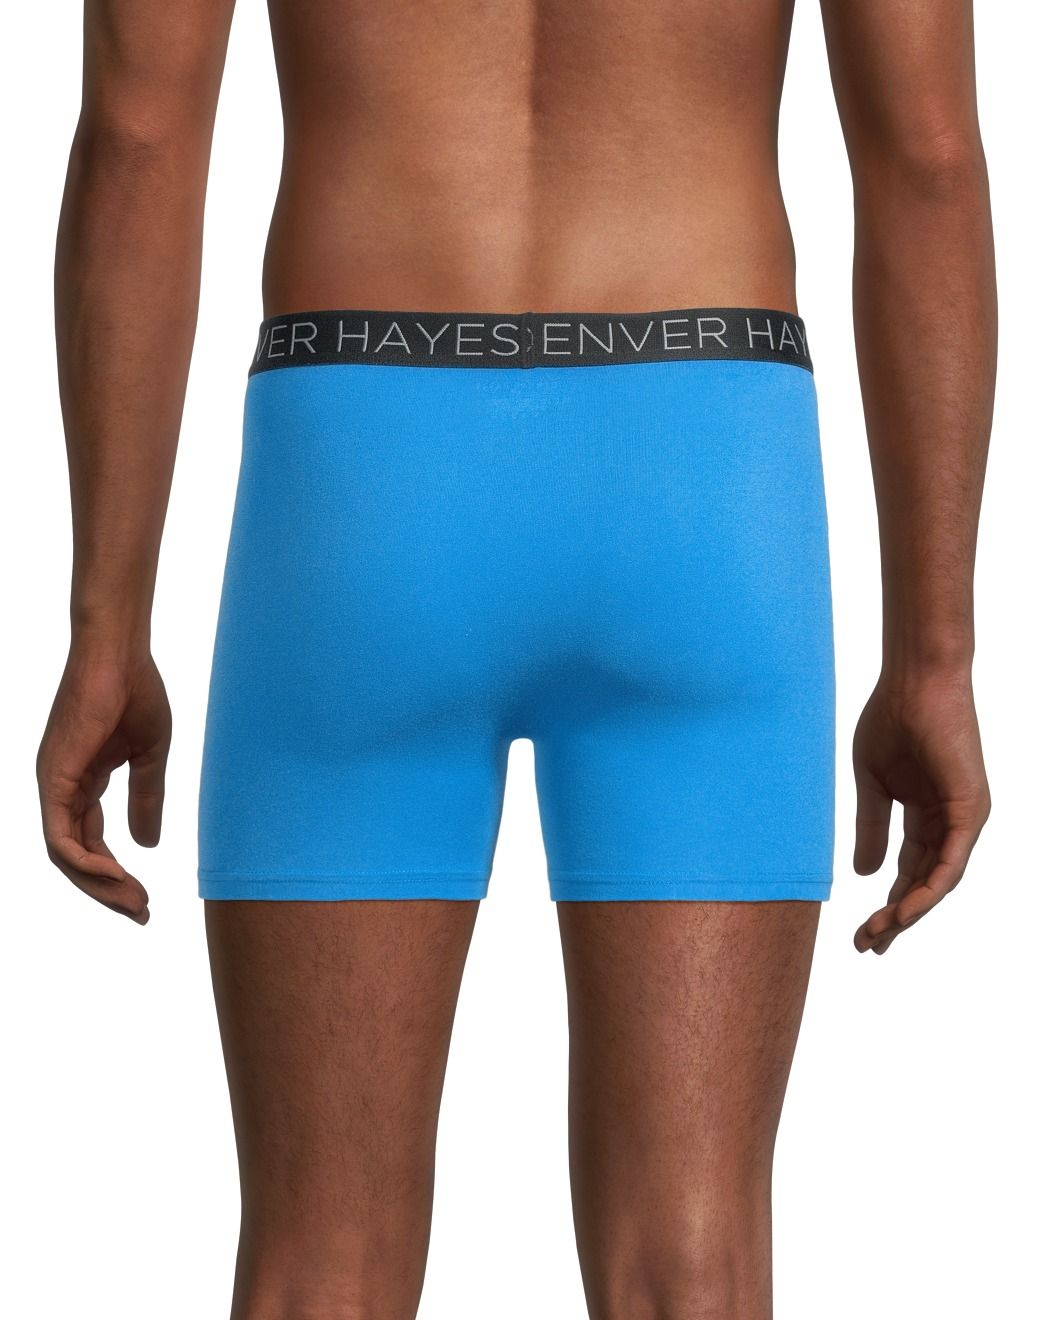 Denver Hayes Men's All Day Comfort Boxer Briefs Underwear